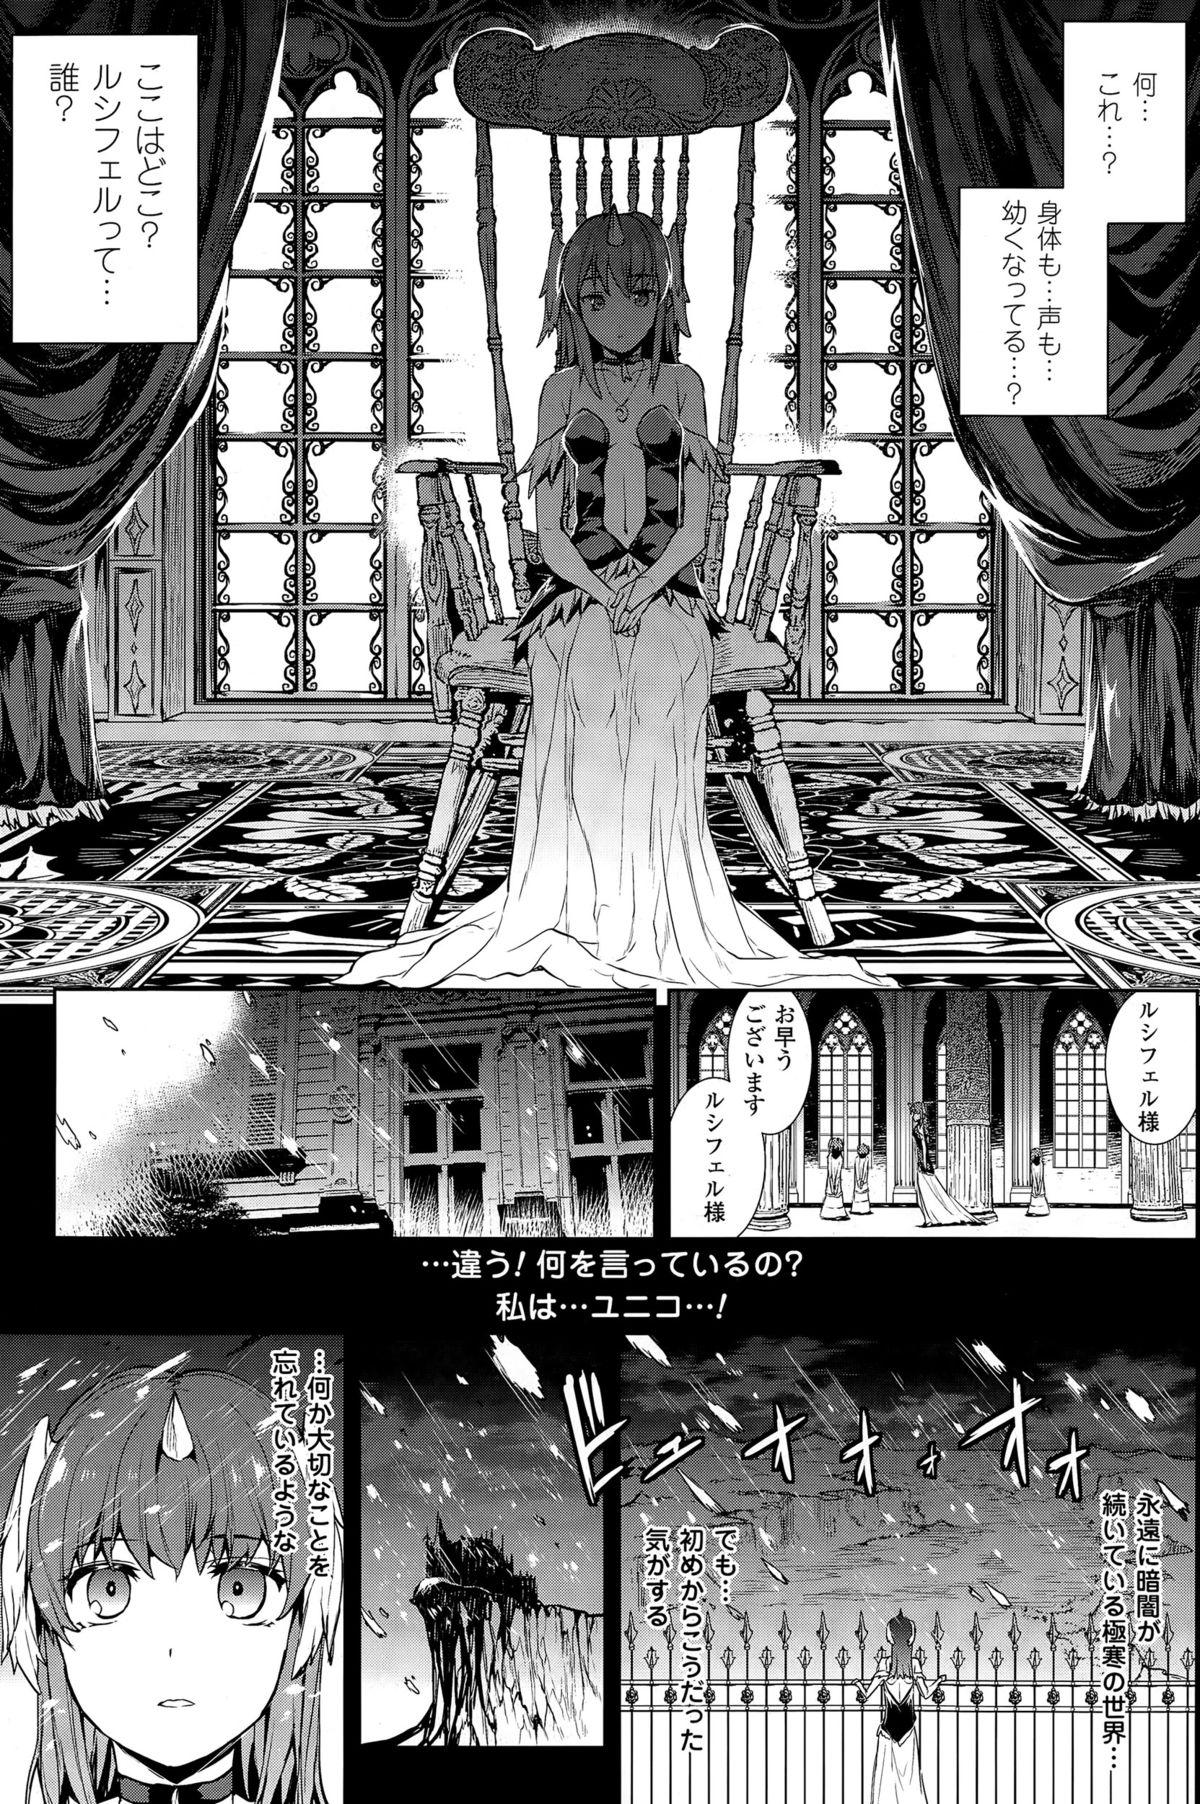 [Erect Sawaru] Shinkyoku no Grimoire -PANDRA saga 2nd story- CH 13-20 83